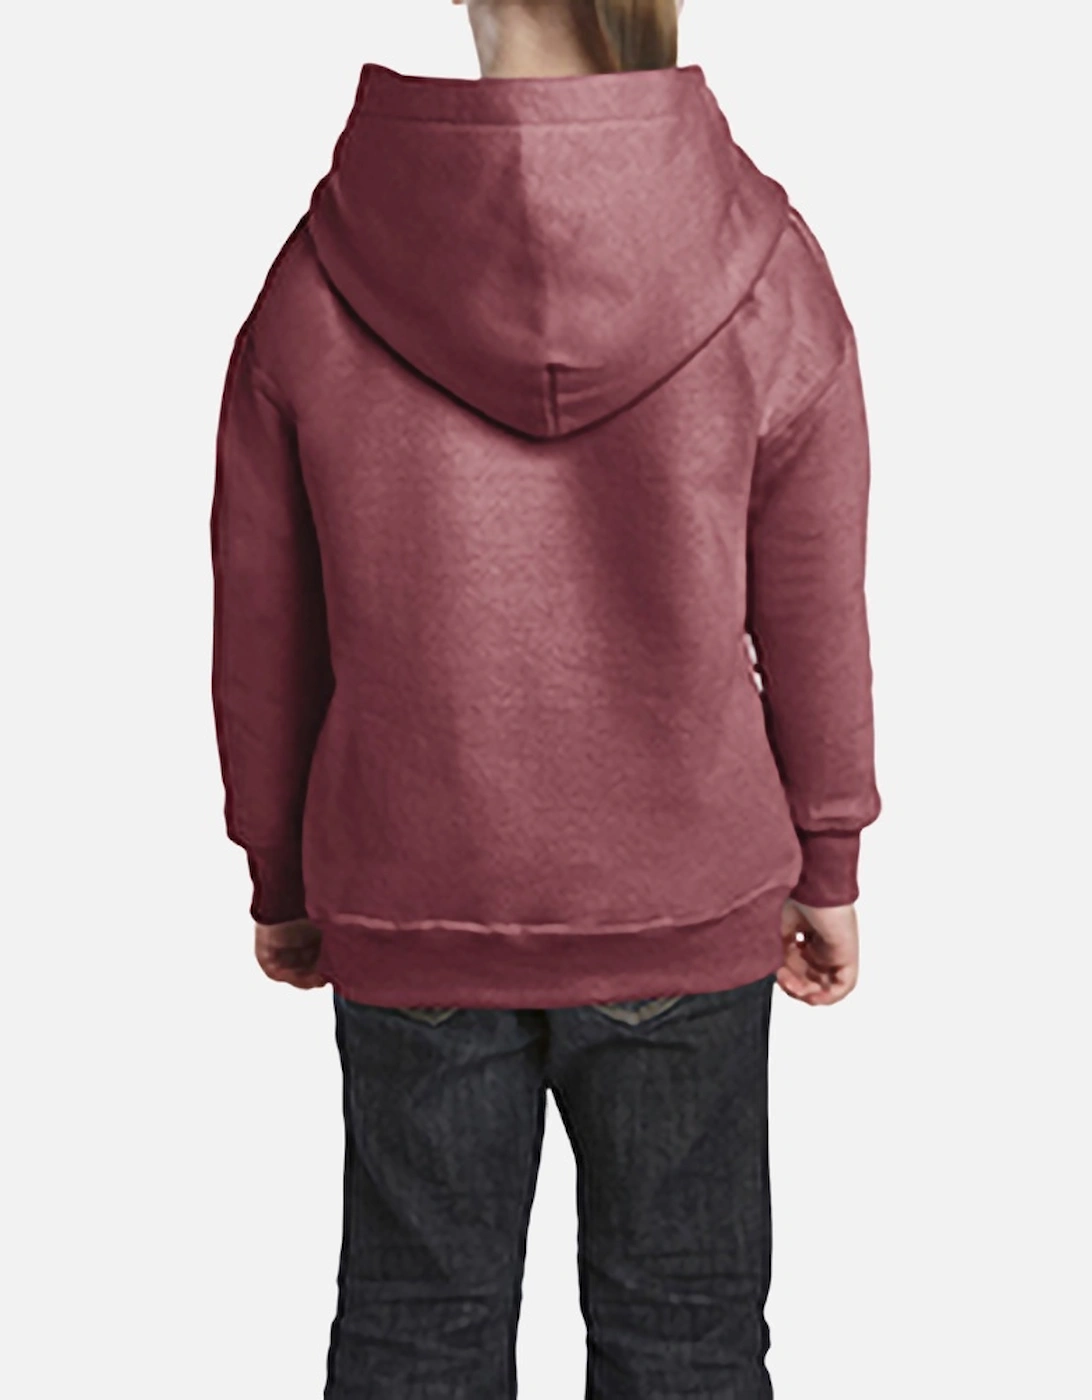 Heavy Blend Childrens Unisex Hooded Sweatshirt Top / Hoodie